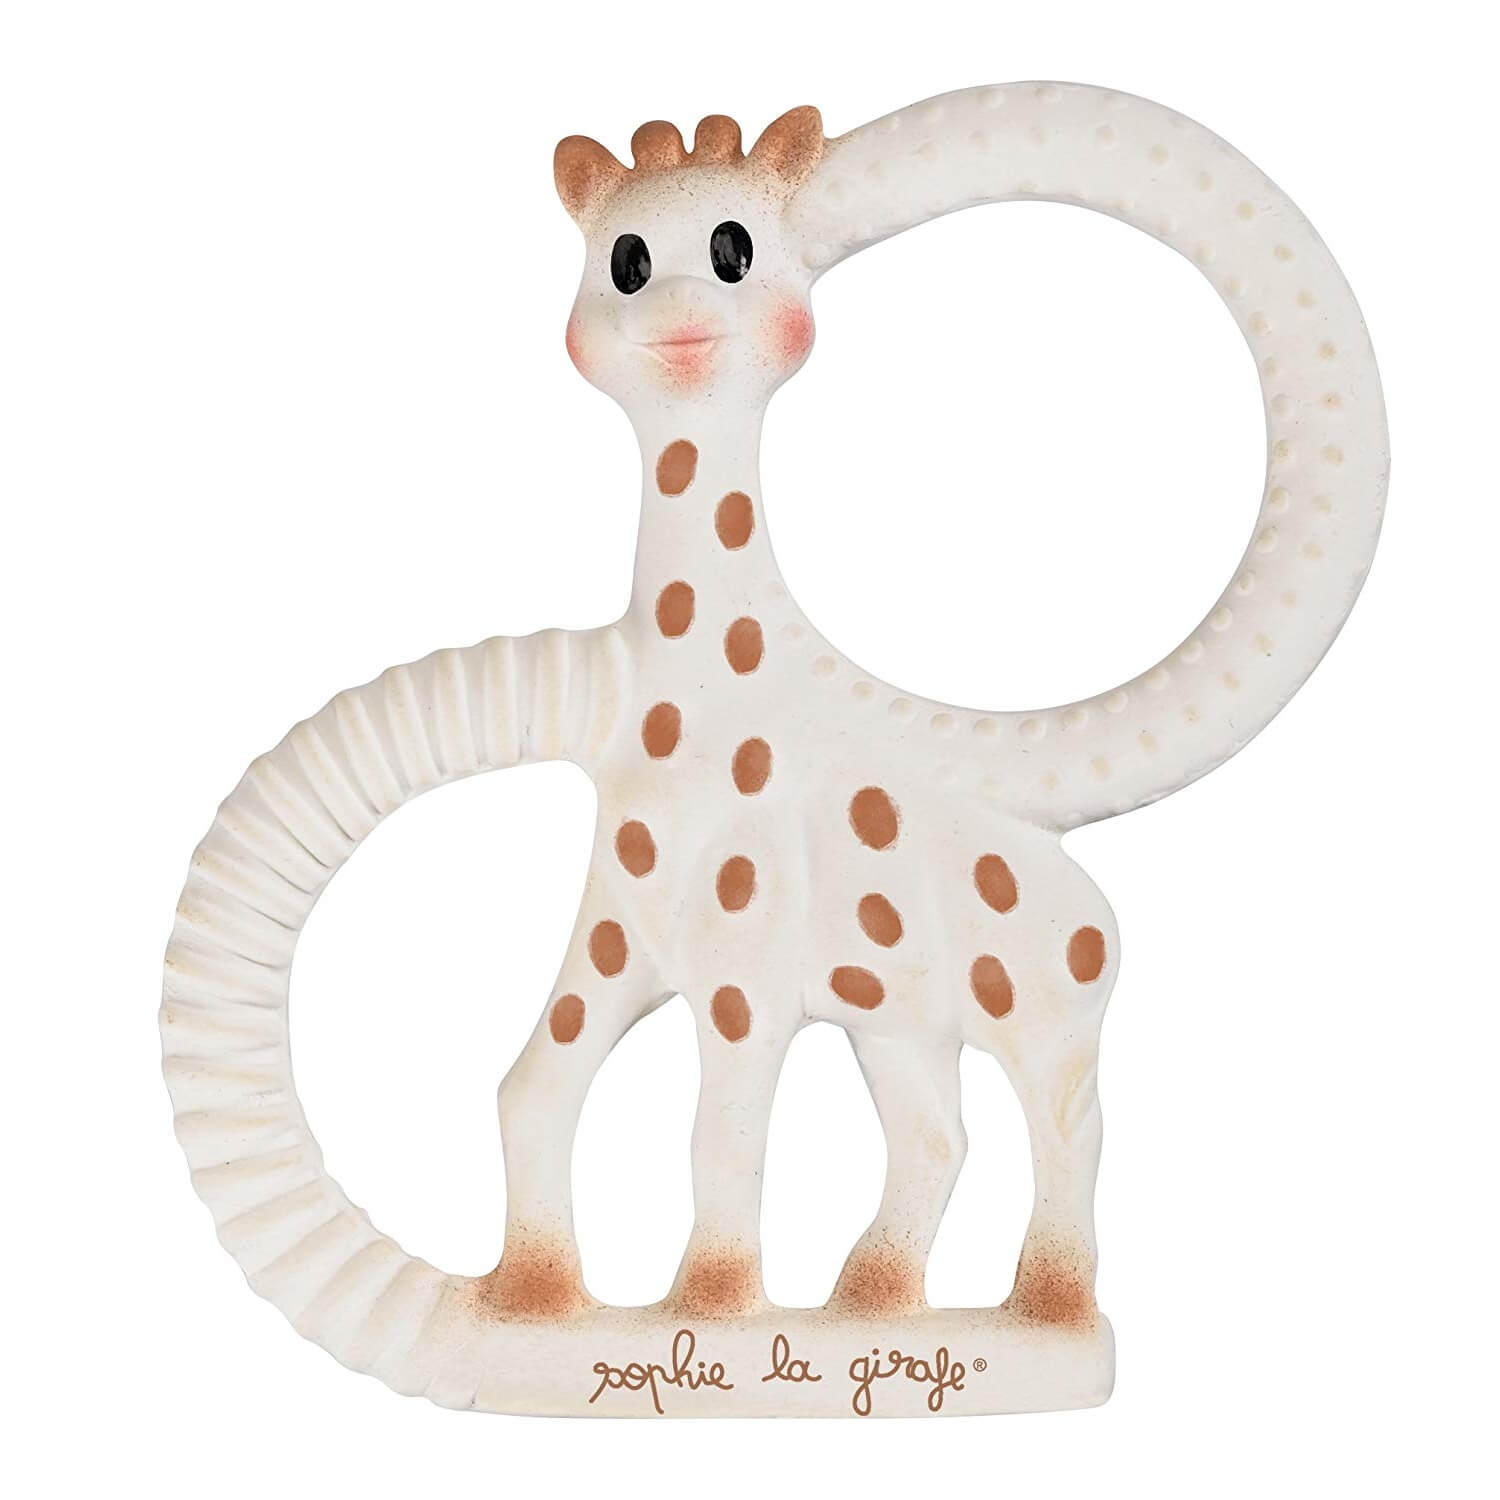 Coffret cadeau Mon trousseau de naissance Sophie la girafe So'pure